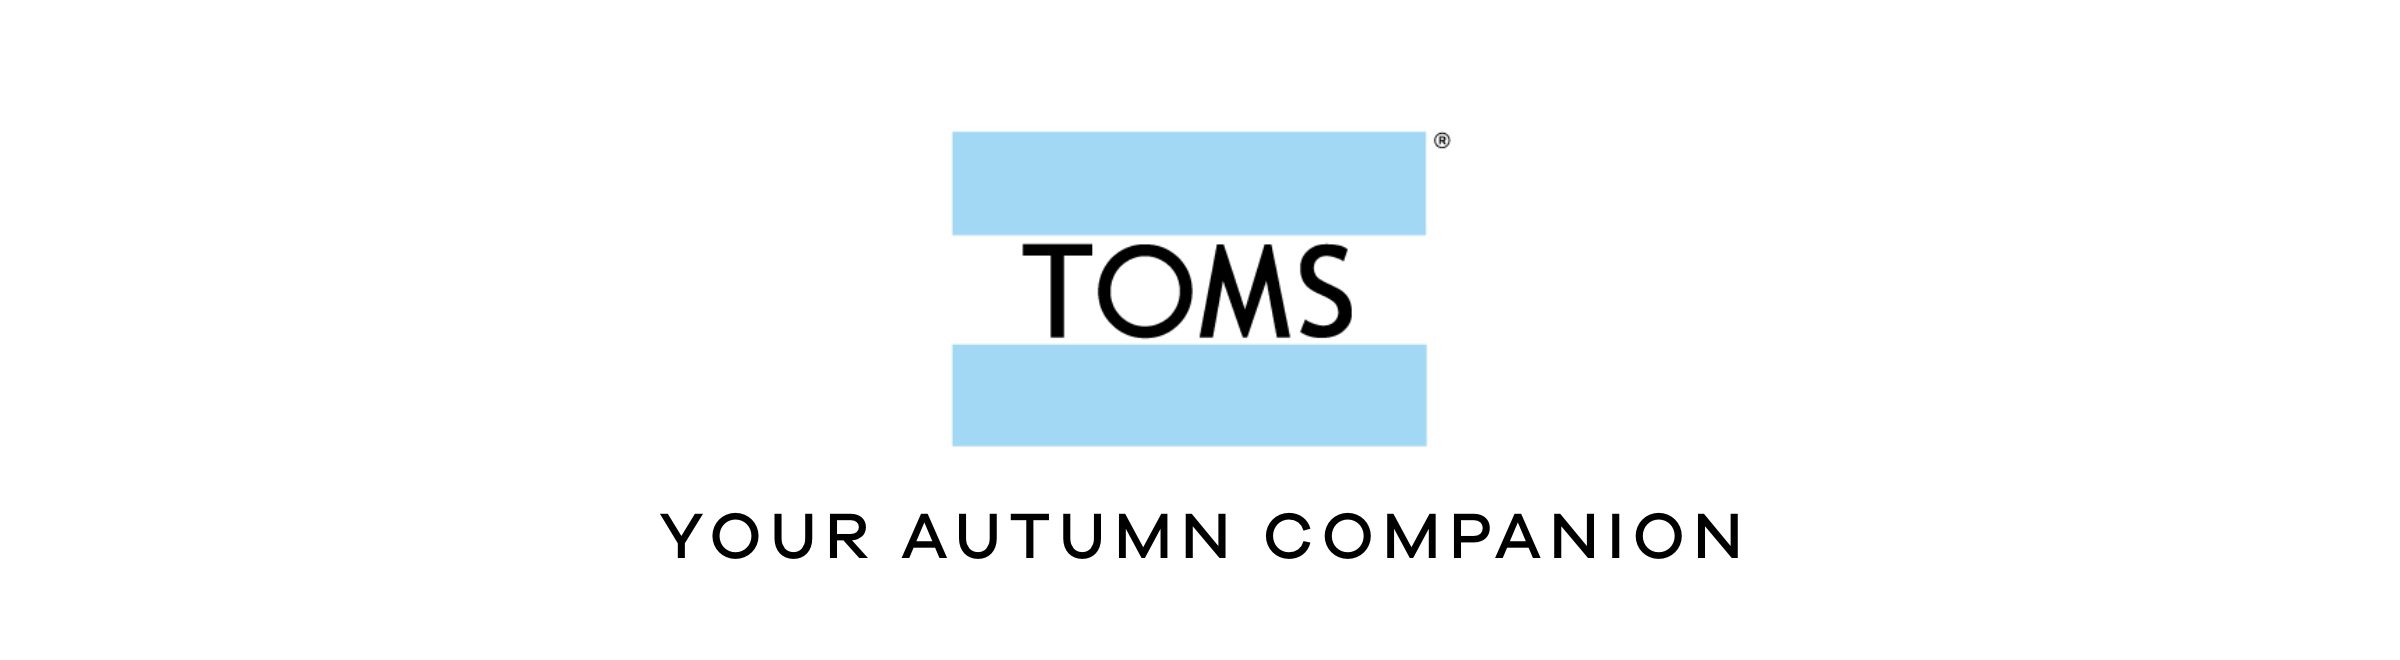 TOMS | Your autumn companion 